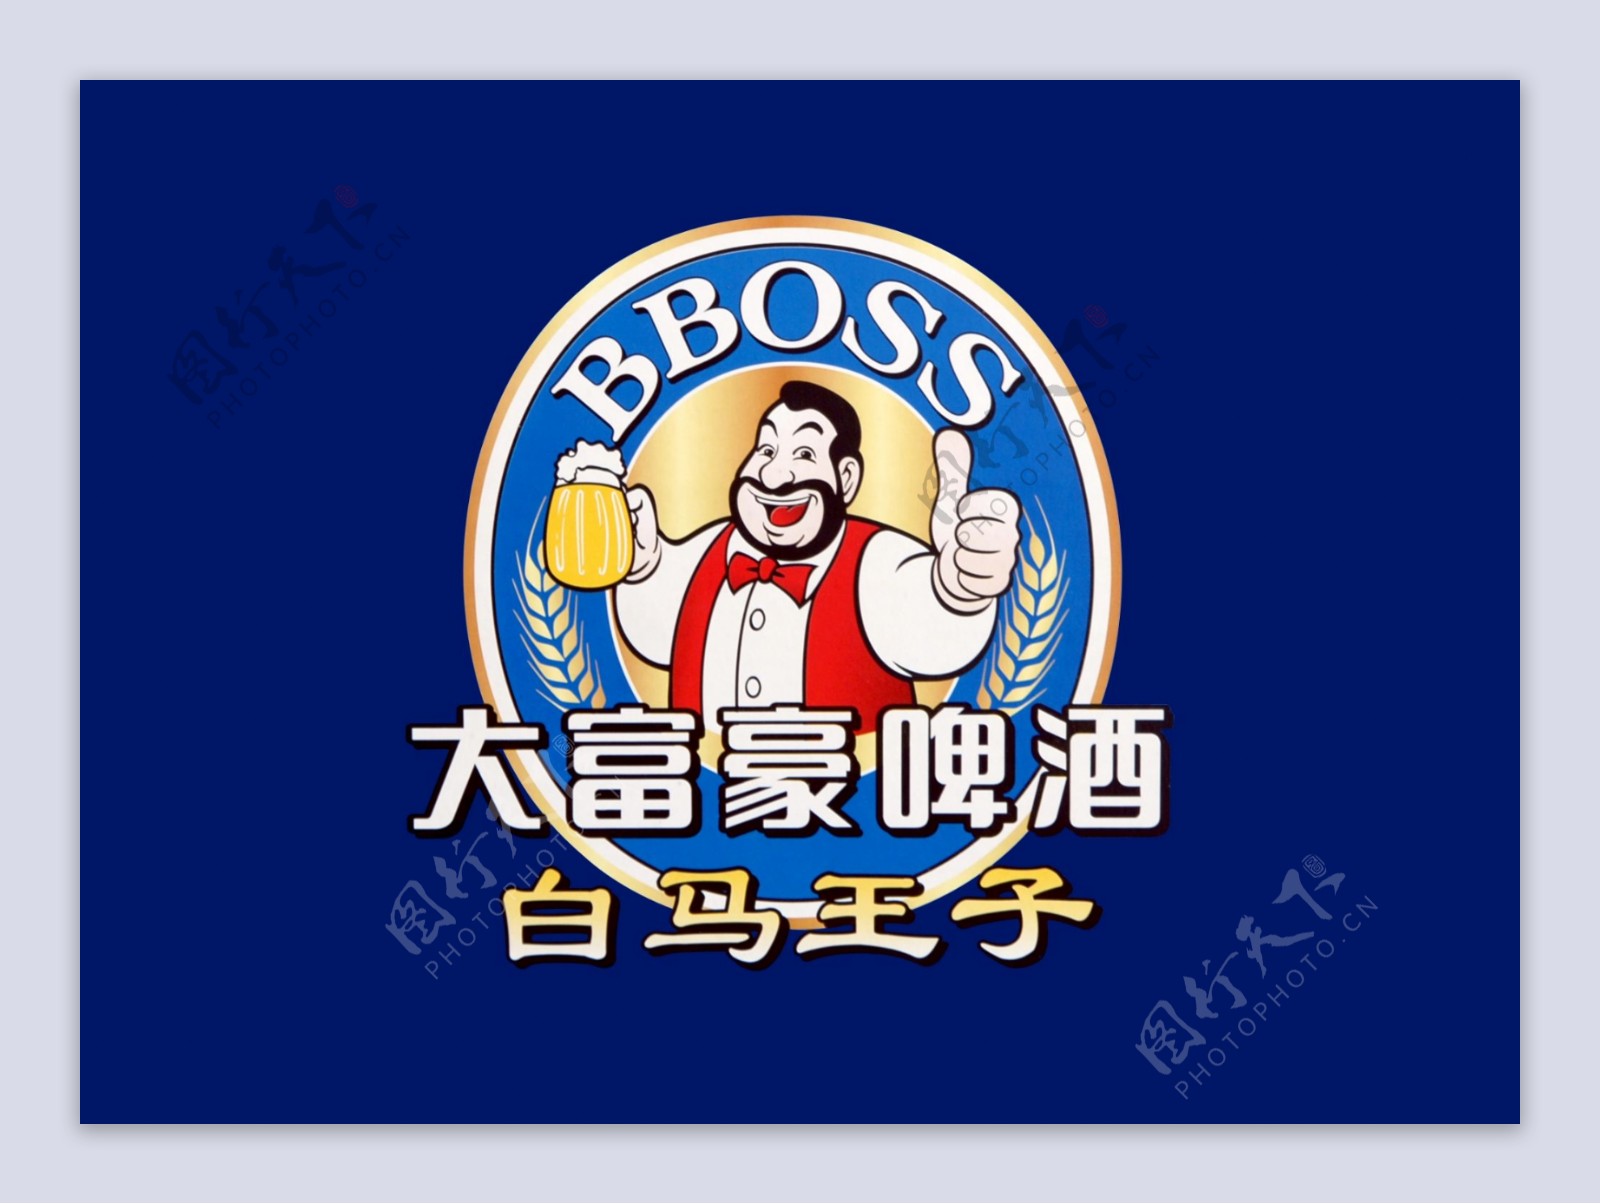 大富豪啤酒白马王子logo图片